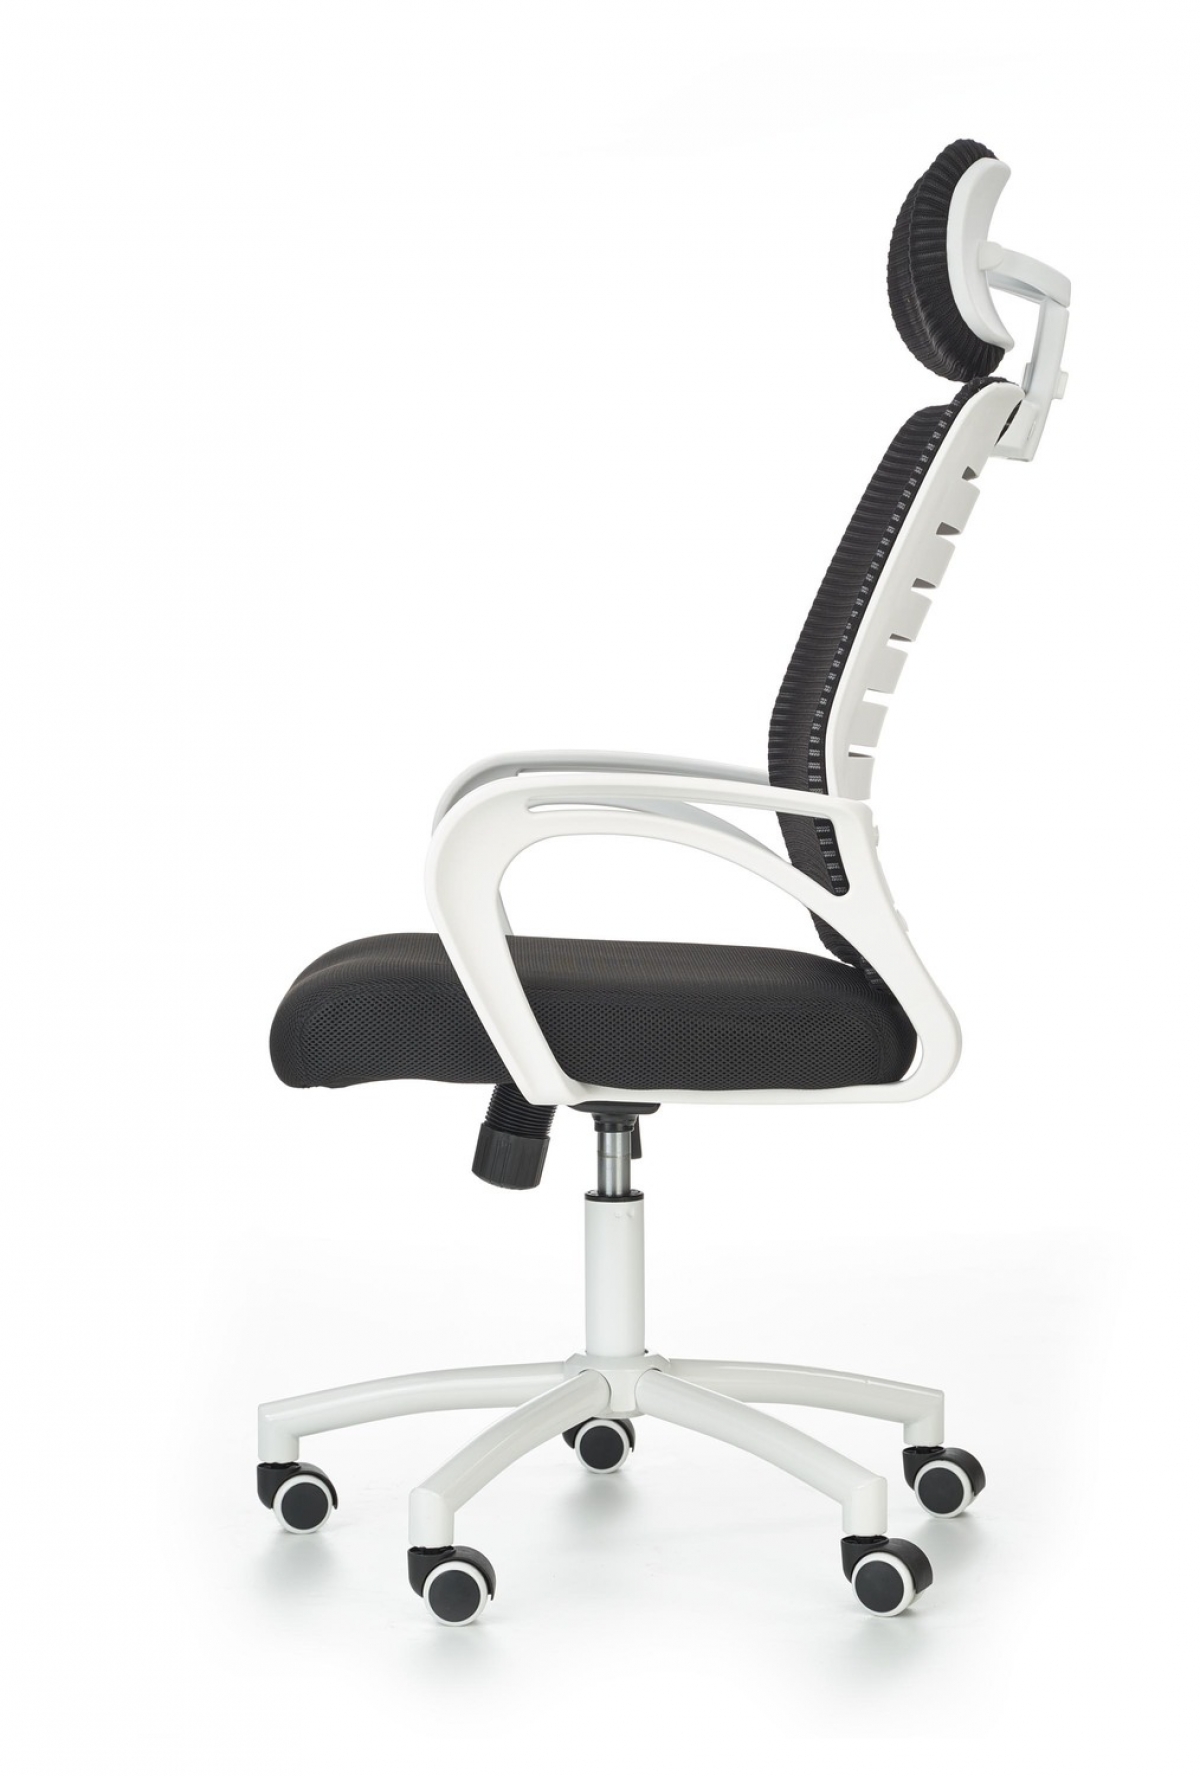 Fotel biurowy Socket z podłokietnikami - biały / czarny fotel na białym stelażu